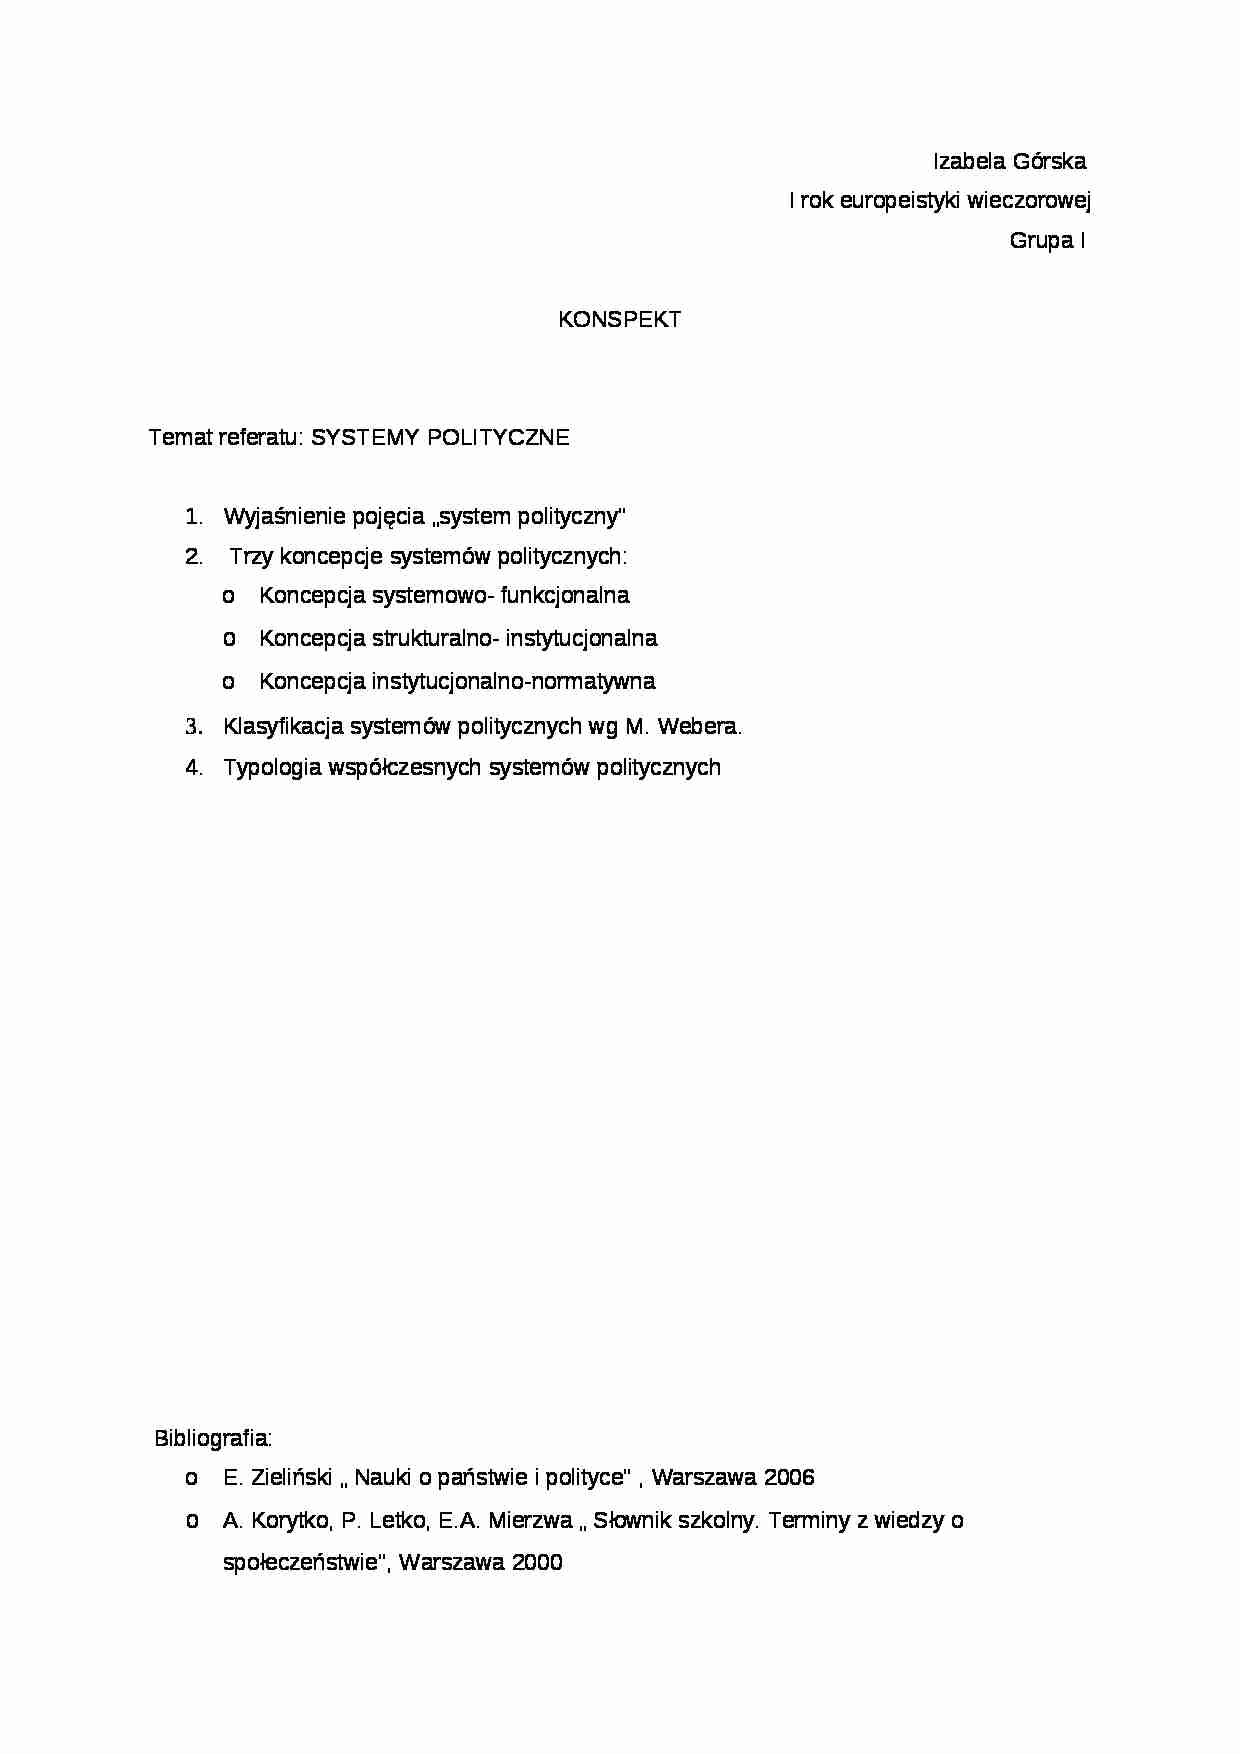 Systemy polityczne-referat - strona 1